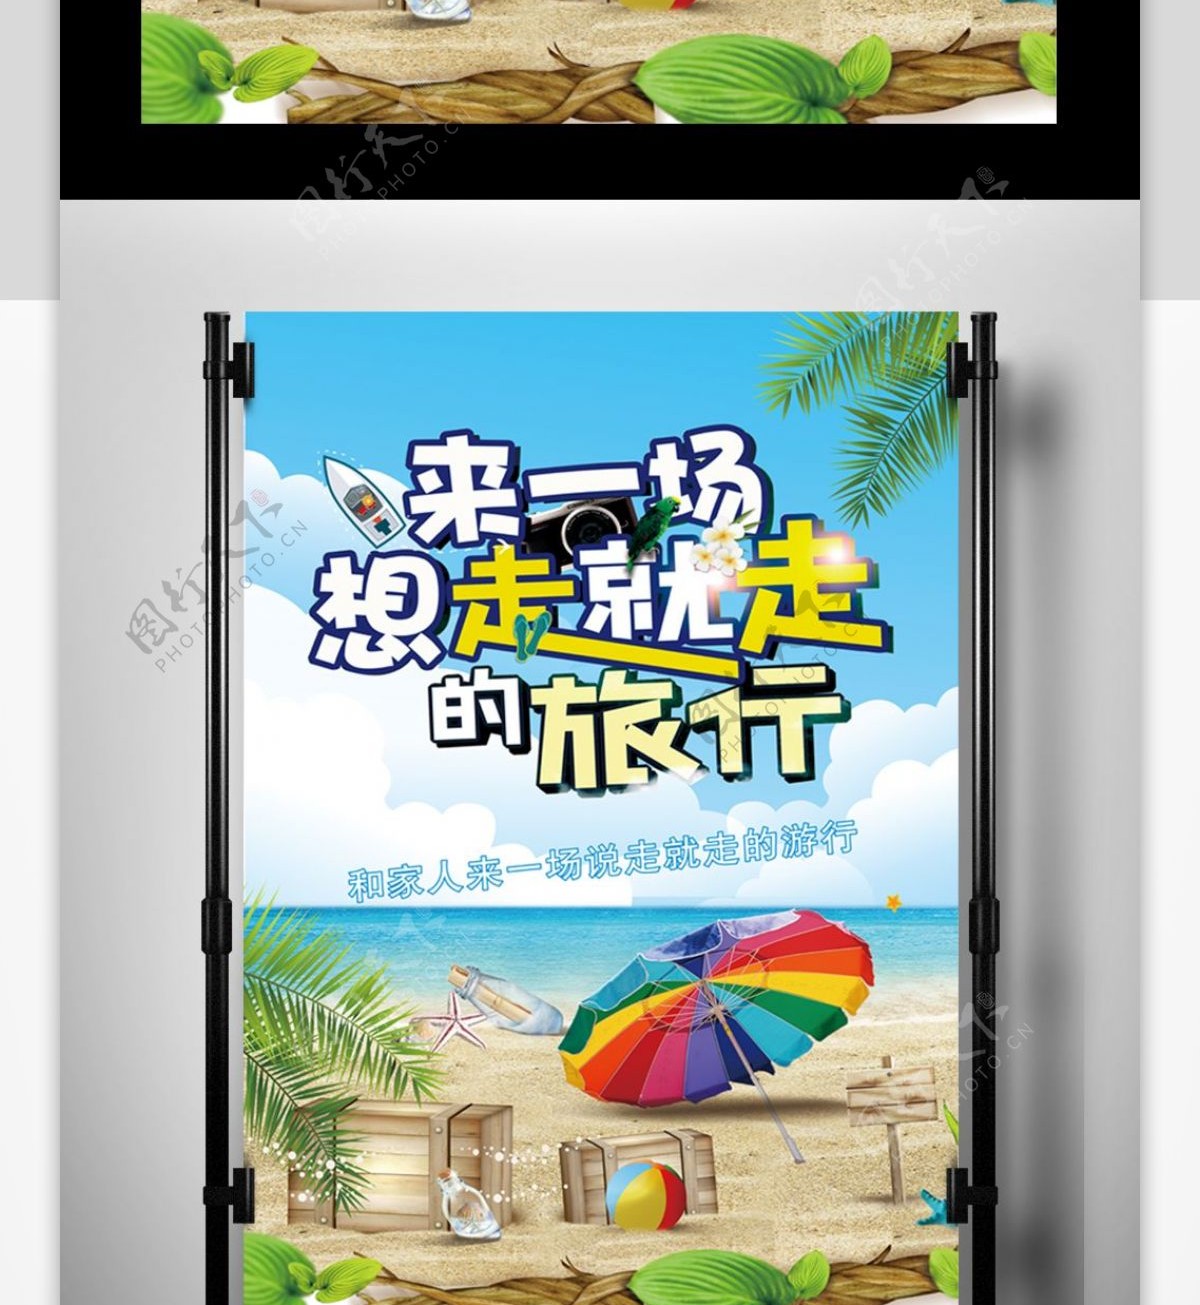 2017年小清新海边旅游海报设计